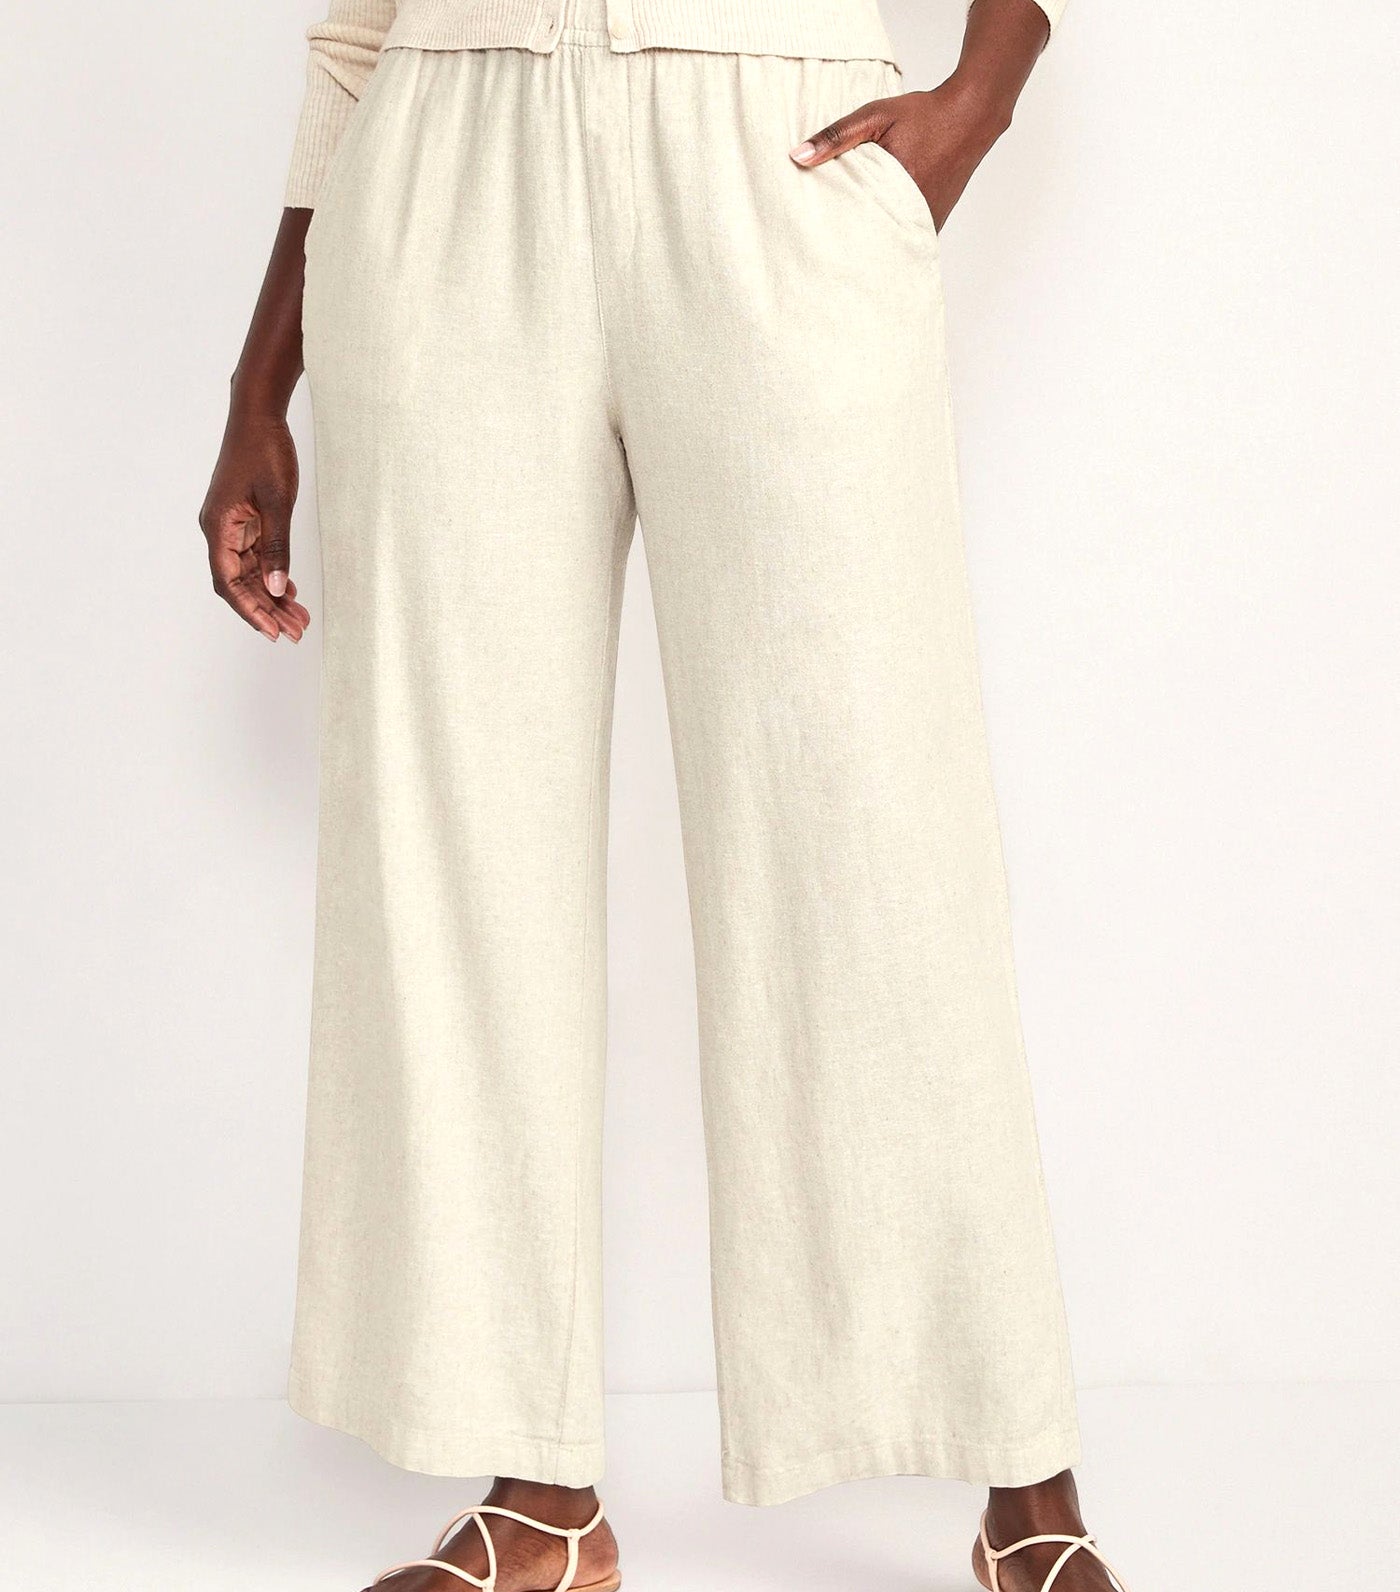 High-Waisted Linen-Blend Wide-Leg Ankle Pants for Women Flax Linen